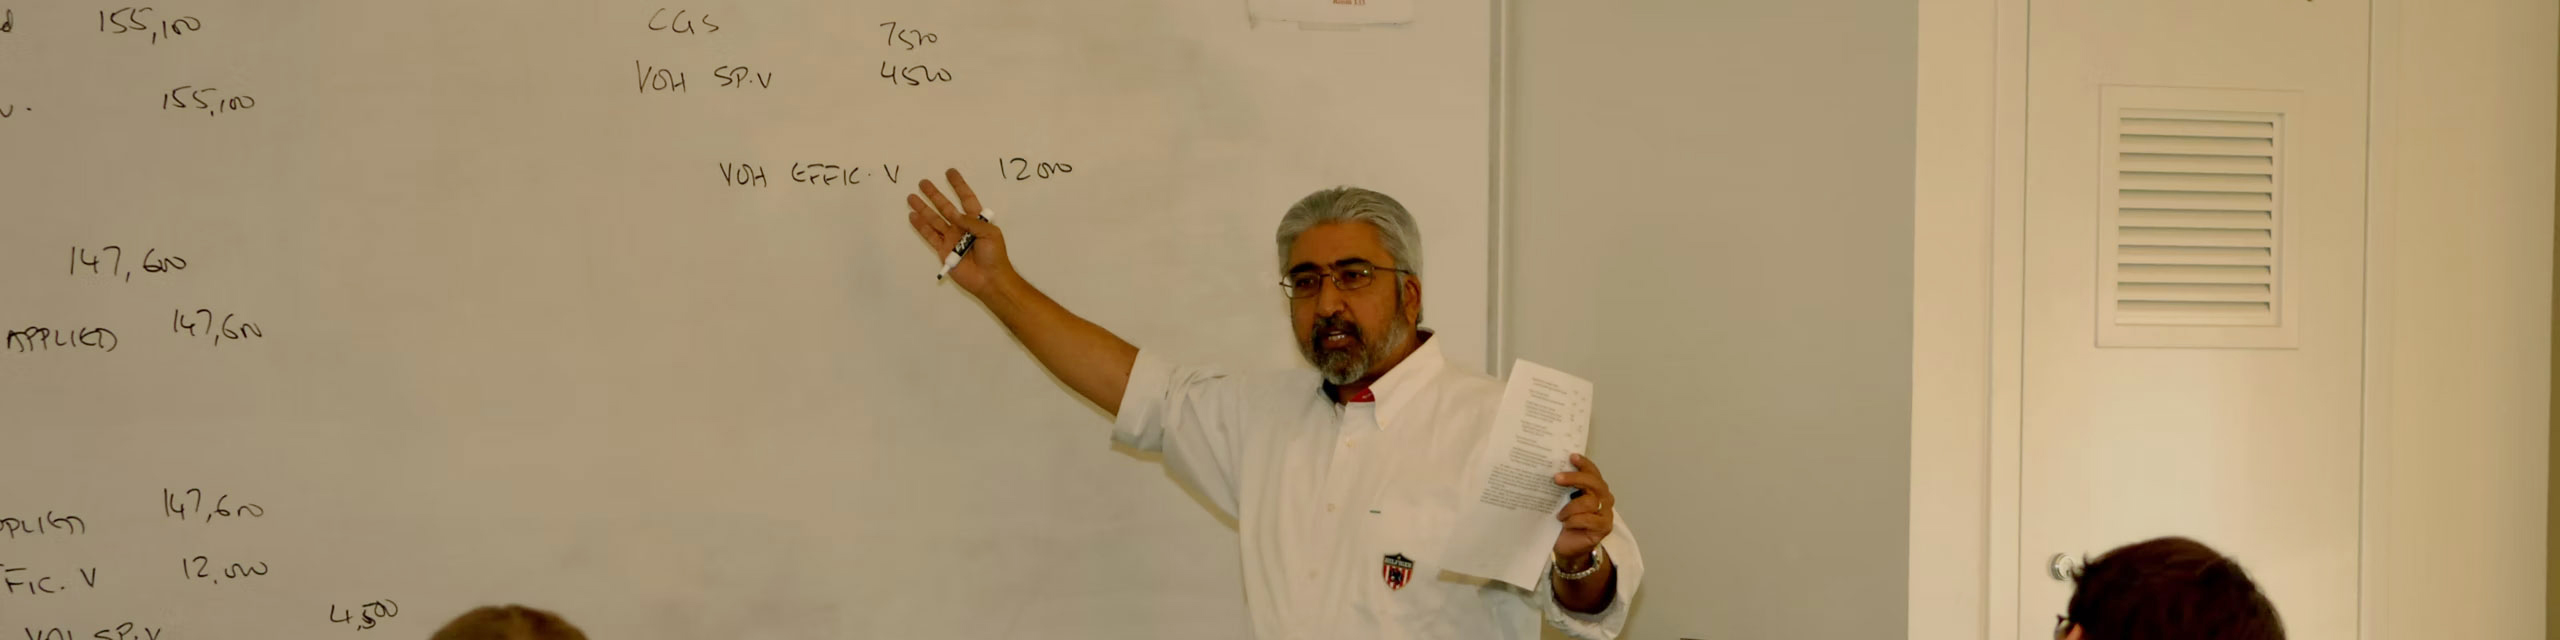 Professor lecturing